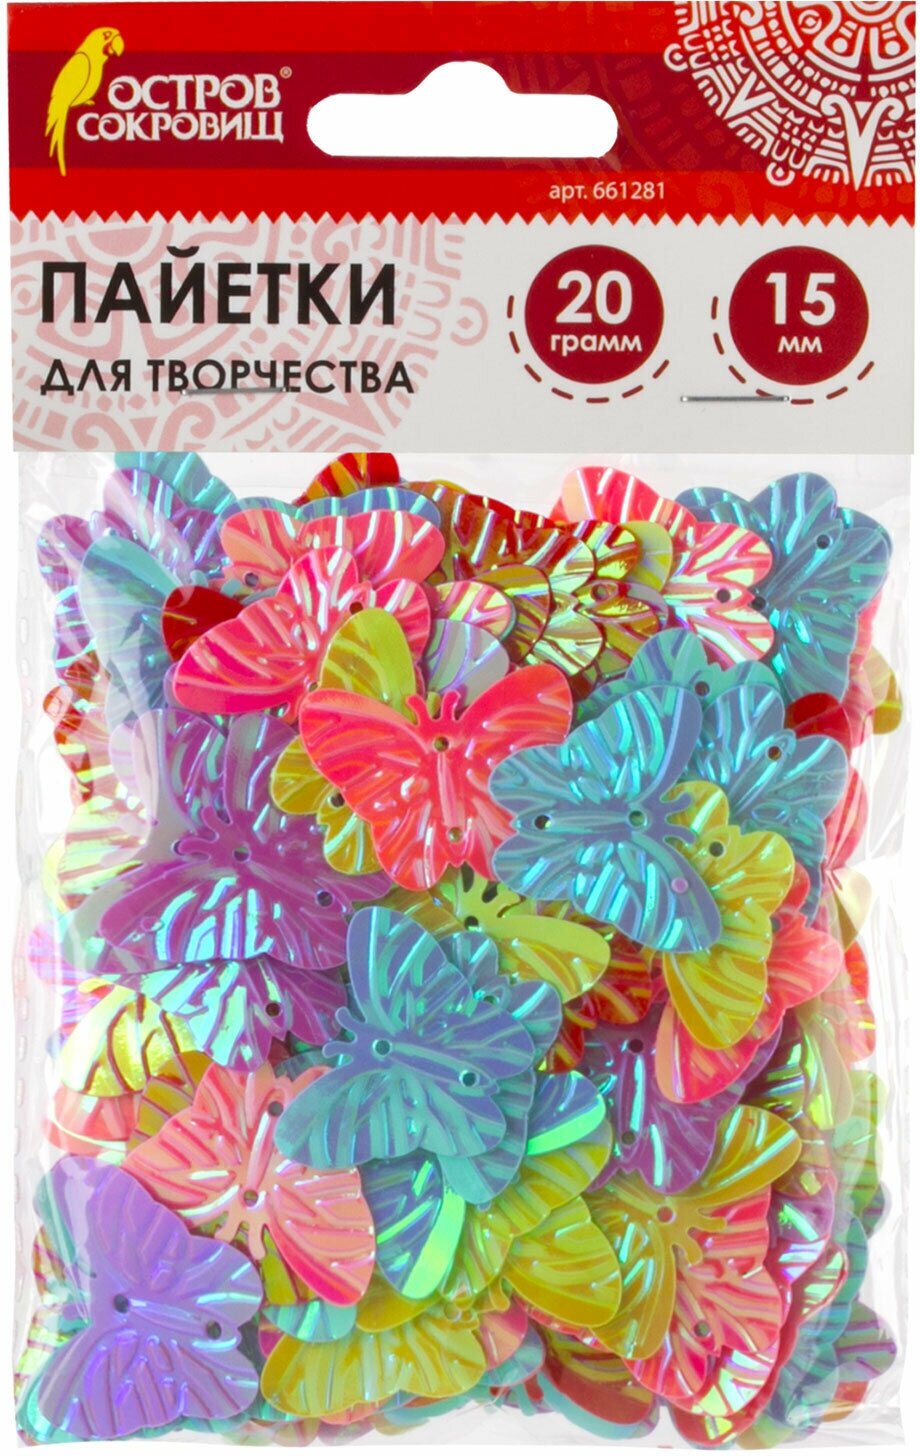 Пайетки для творчества "Бабочки", яркие, цвет ассорти, 5 цветов, 15 мм, 20 грамм, остров сокровищ, 661281